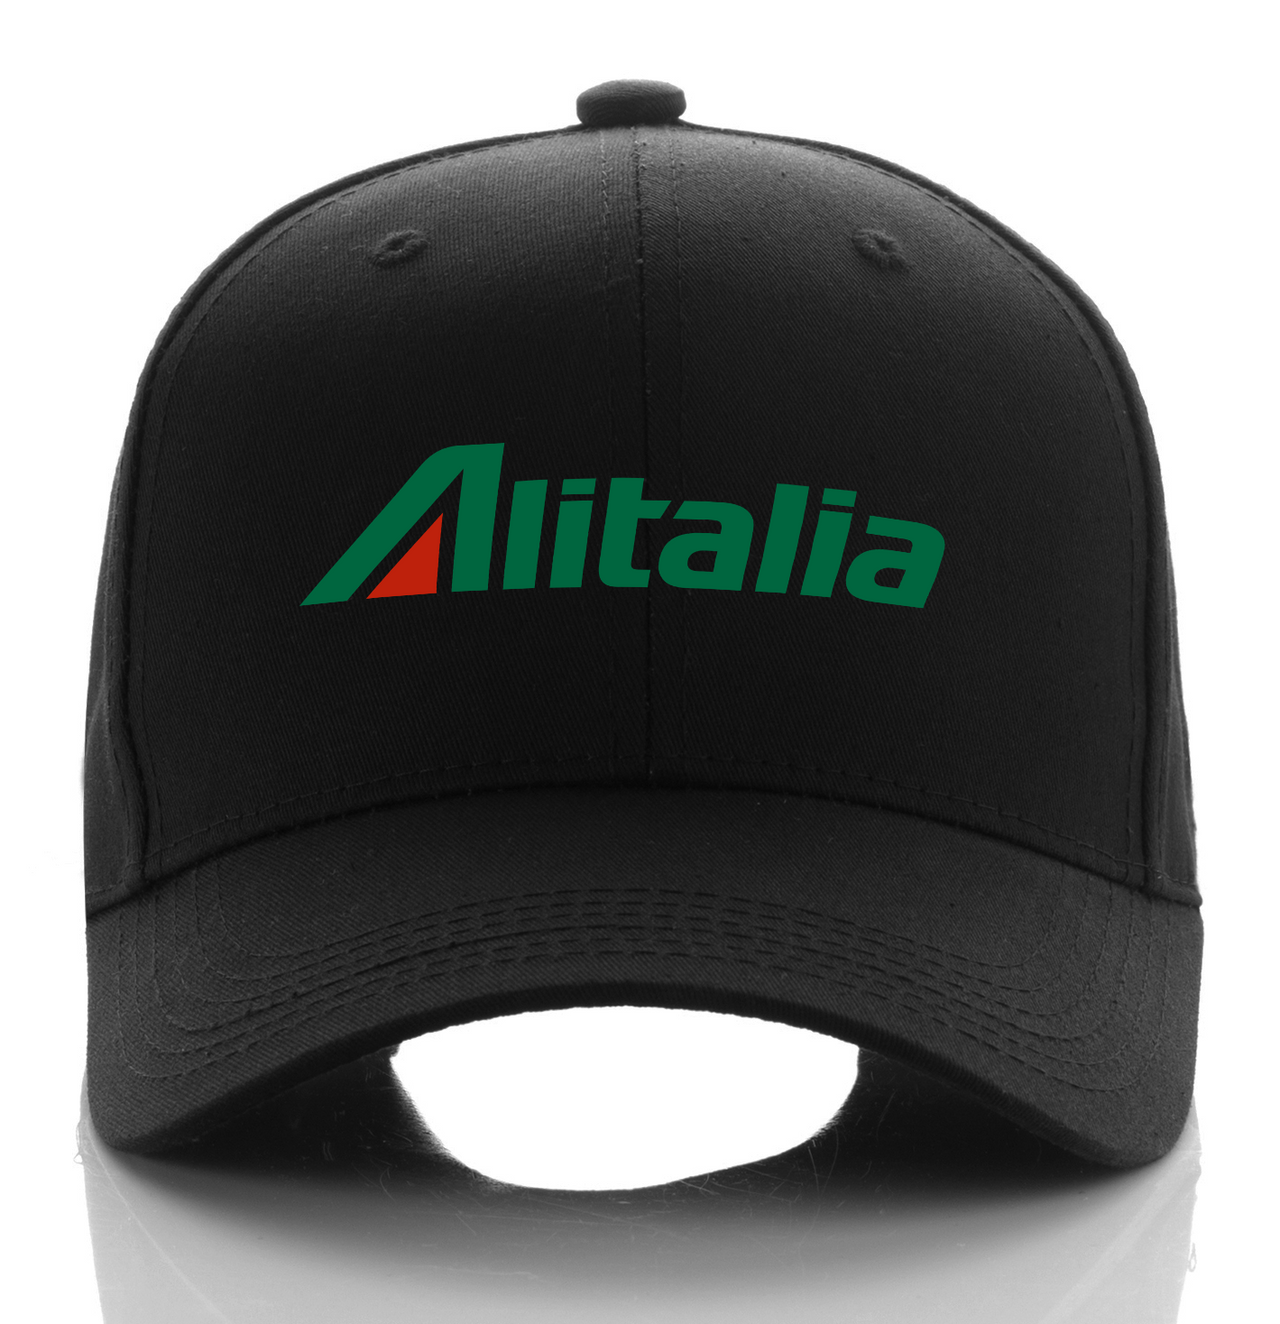 ALITALIA AIRLINE DESIGNED CAP